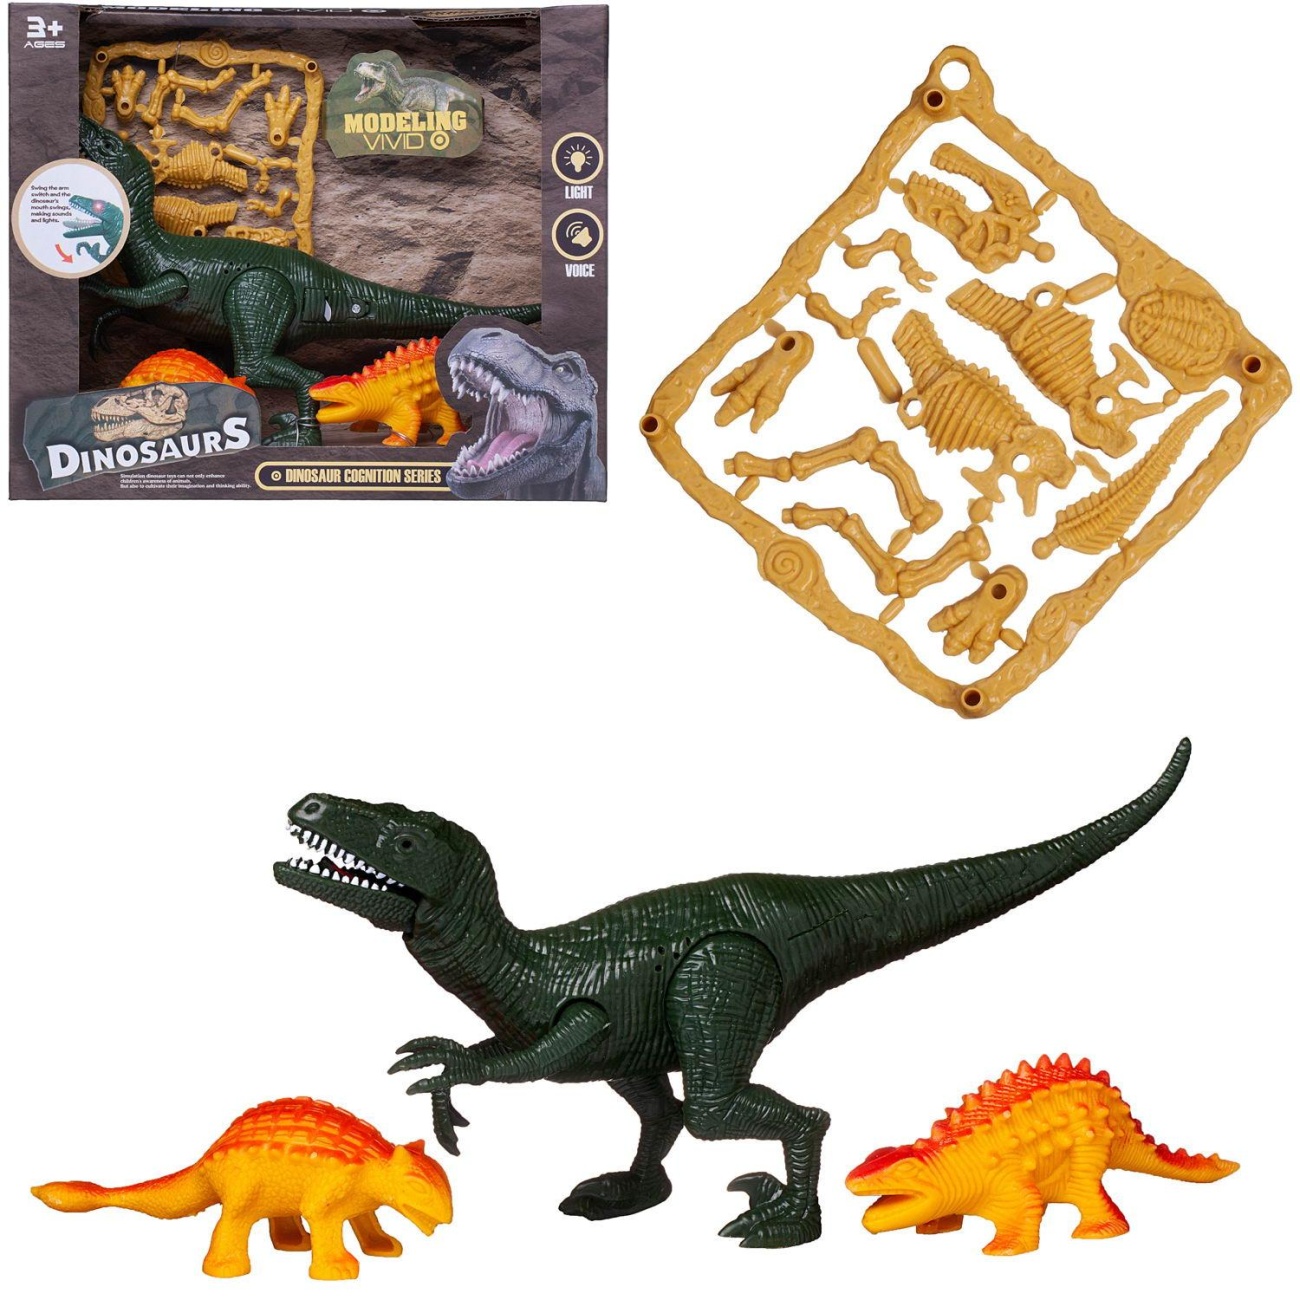 Игровой набор Junfa Динозавры (3 динозавра, детали д/сборки динозавра) свет/звук WA-19282